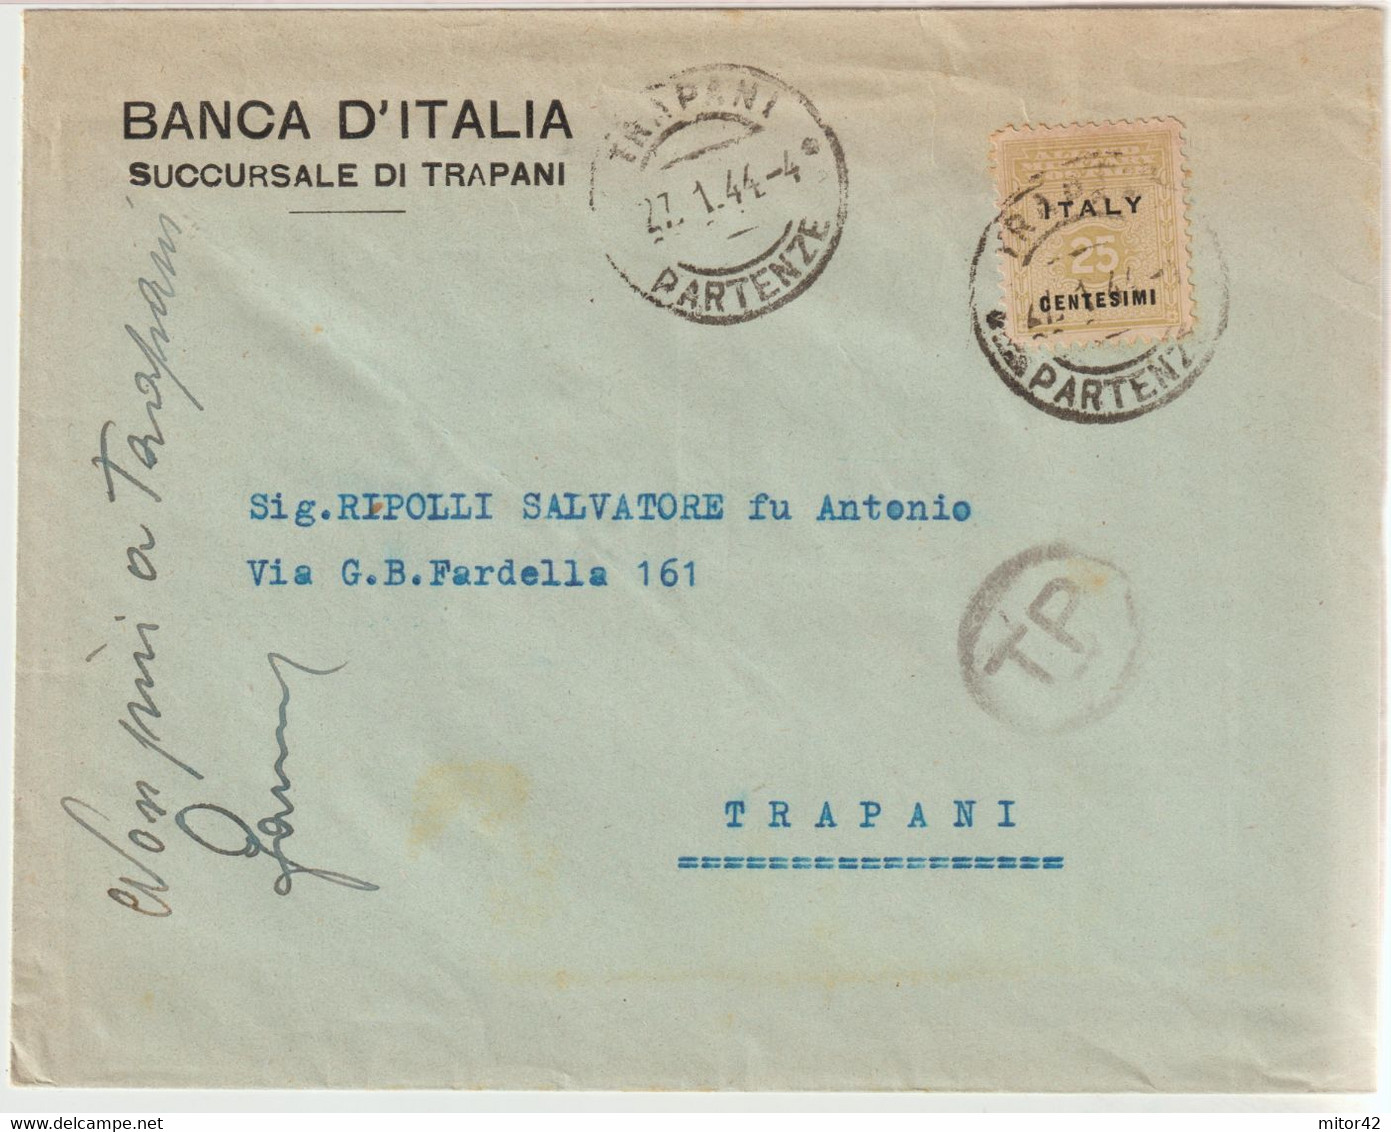 134-Amgot-Occupazione Alleata Sicilia-Busta Intestata-Banca D'Italia-Succursale Di Trapani-25c. Da E X Trapani - Occup. Anglo-americana: Sicilia